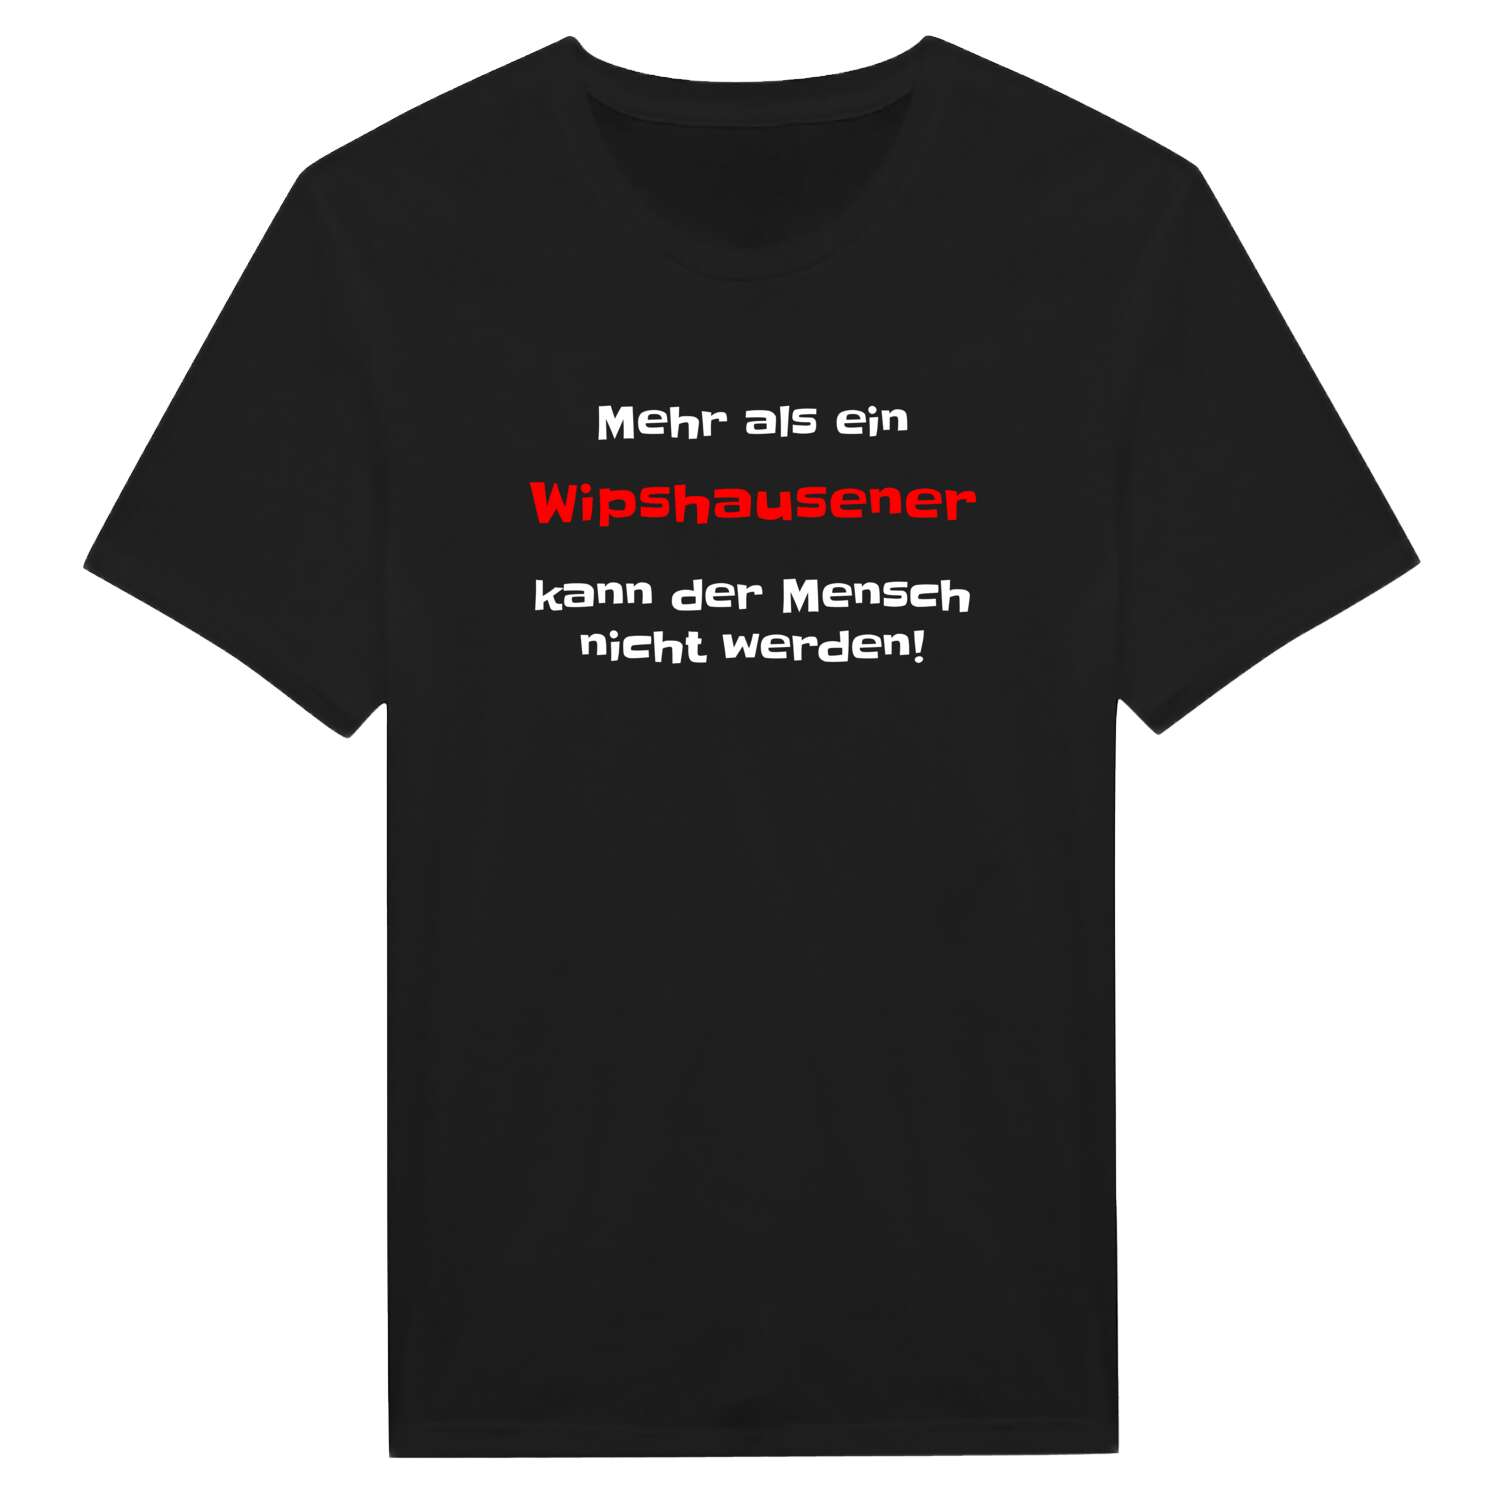 Wipshausen T-Shirt »Mehr als ein«